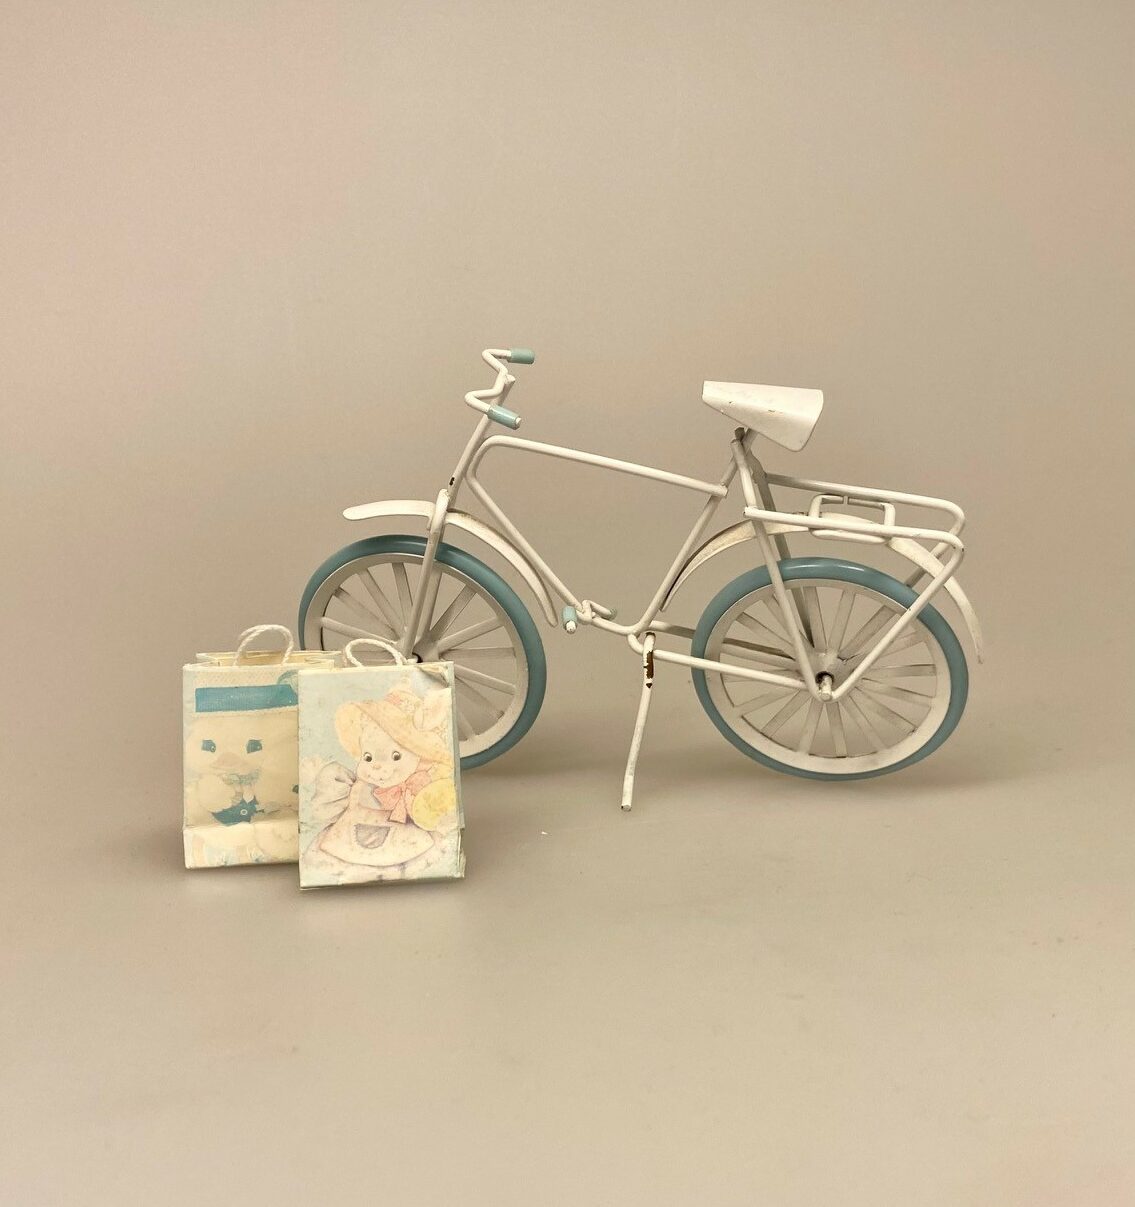 Kun én af Hver - Miniature Cykel med Indkøbsposer, dukkehustilbehør, sjov, sangskjuler, symbolsk, gave, gavekort, ny, cykel, konfirmation, nisser, 1:12, miniaturer, kun, en, unika, retro,